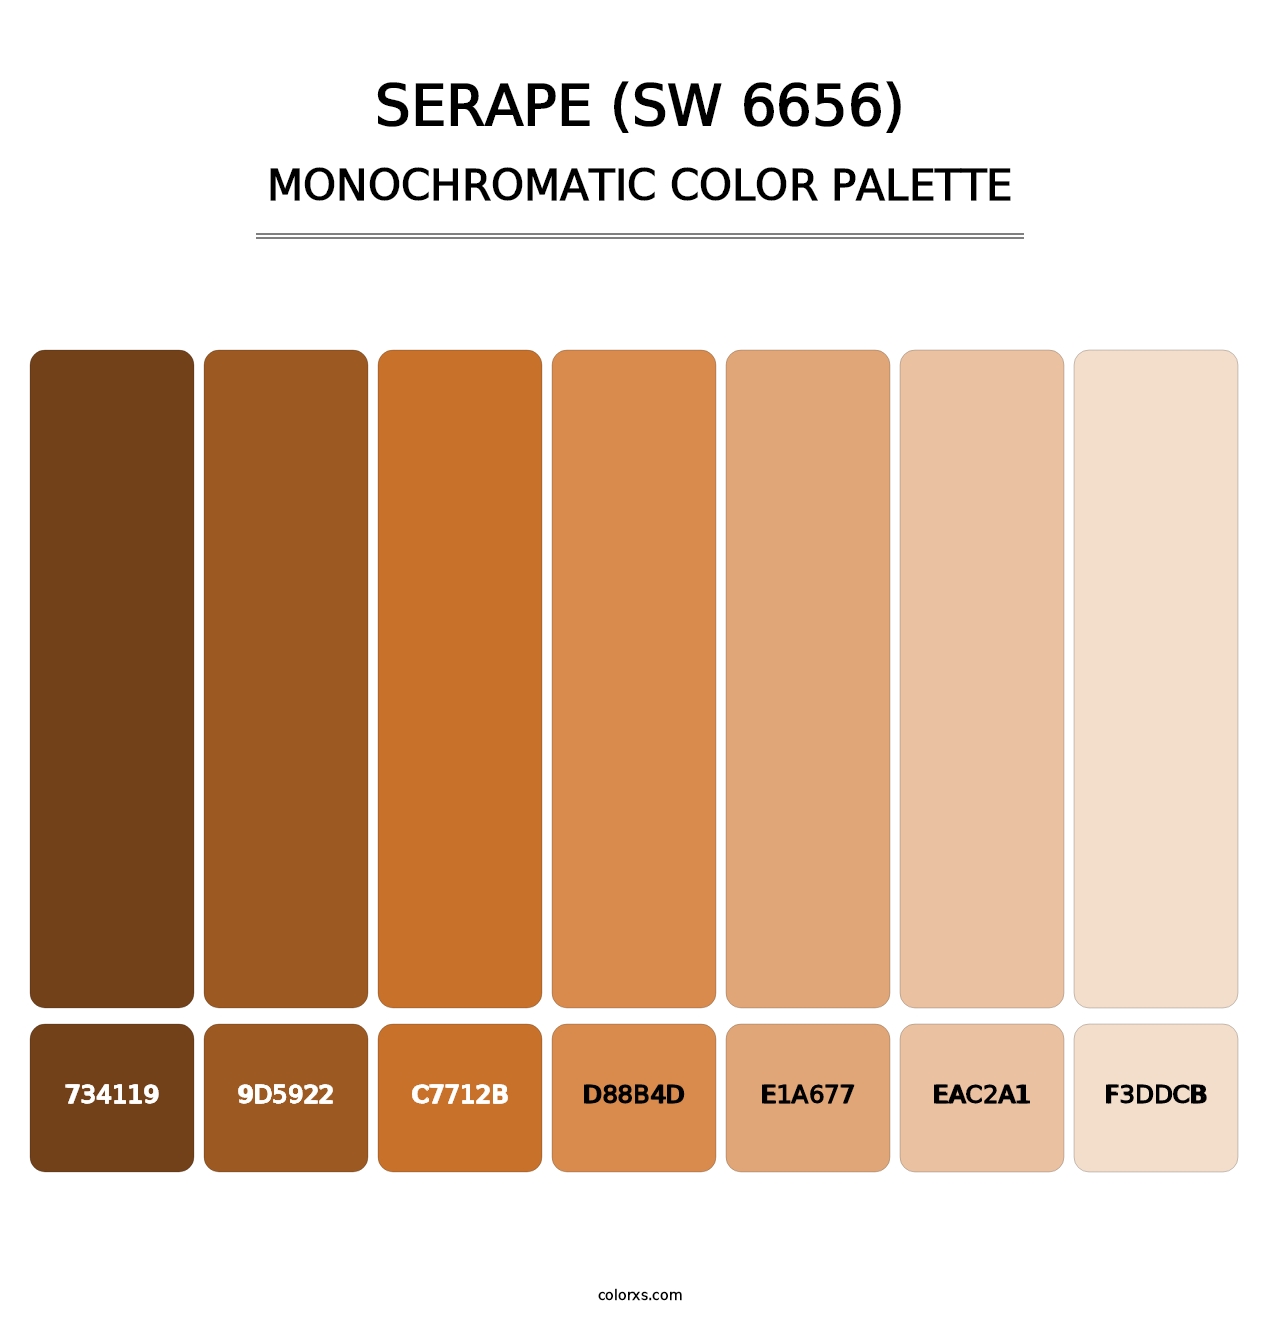 Serape (SW 6656) - Monochromatic Color Palette